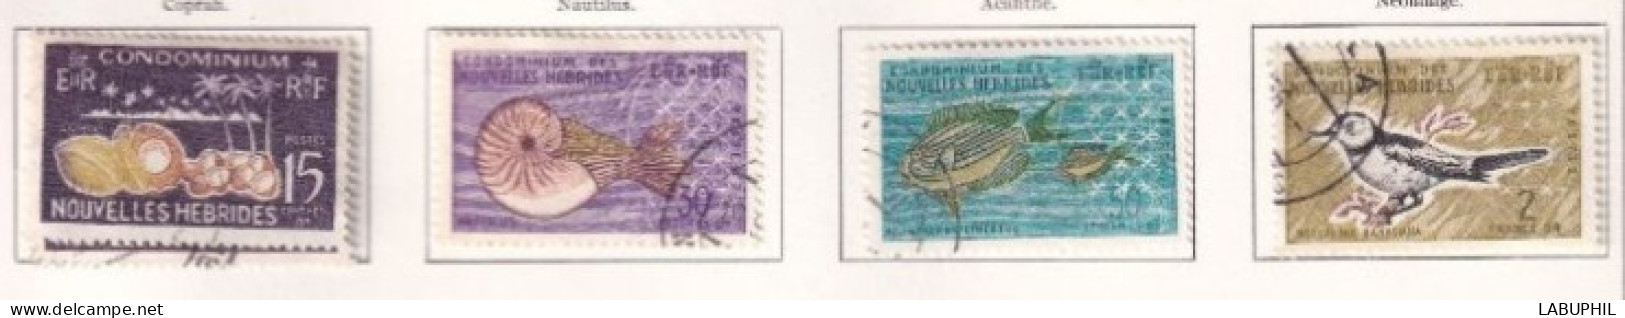 NOUVELLES HEBRIDES Dispersion D'une Collection Oblitéré Et Mlh  1963 Faune - Usados